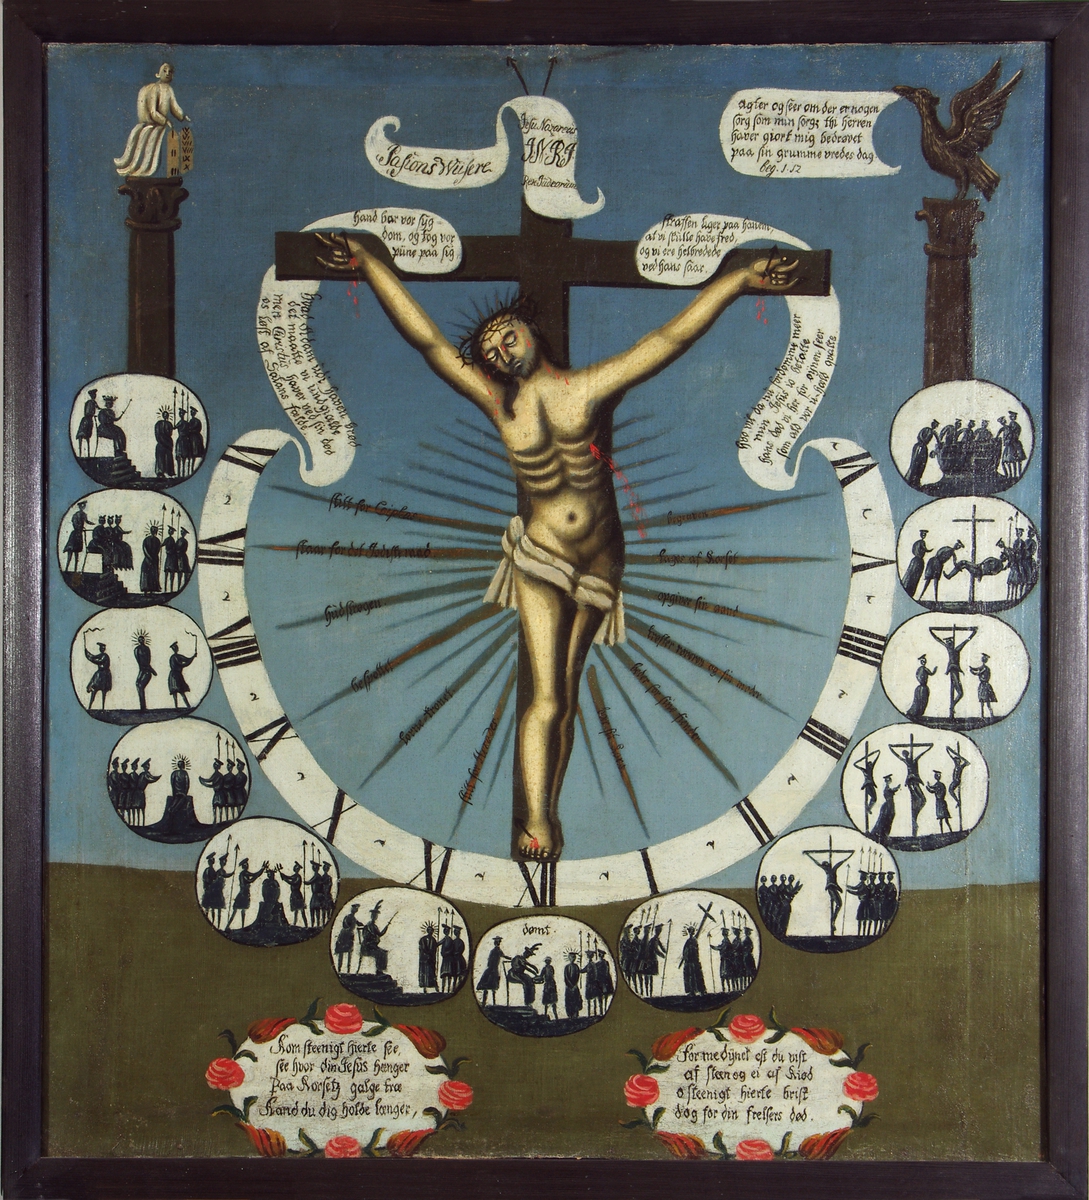 Pasjonsviser. Maleriet viser Kristus på korset omgitt av visere med klokkeslettene 6 om morgenen til kl seks om kvelden i form av romertall og små bilder som illustrerer lidelseshistorien time for time.